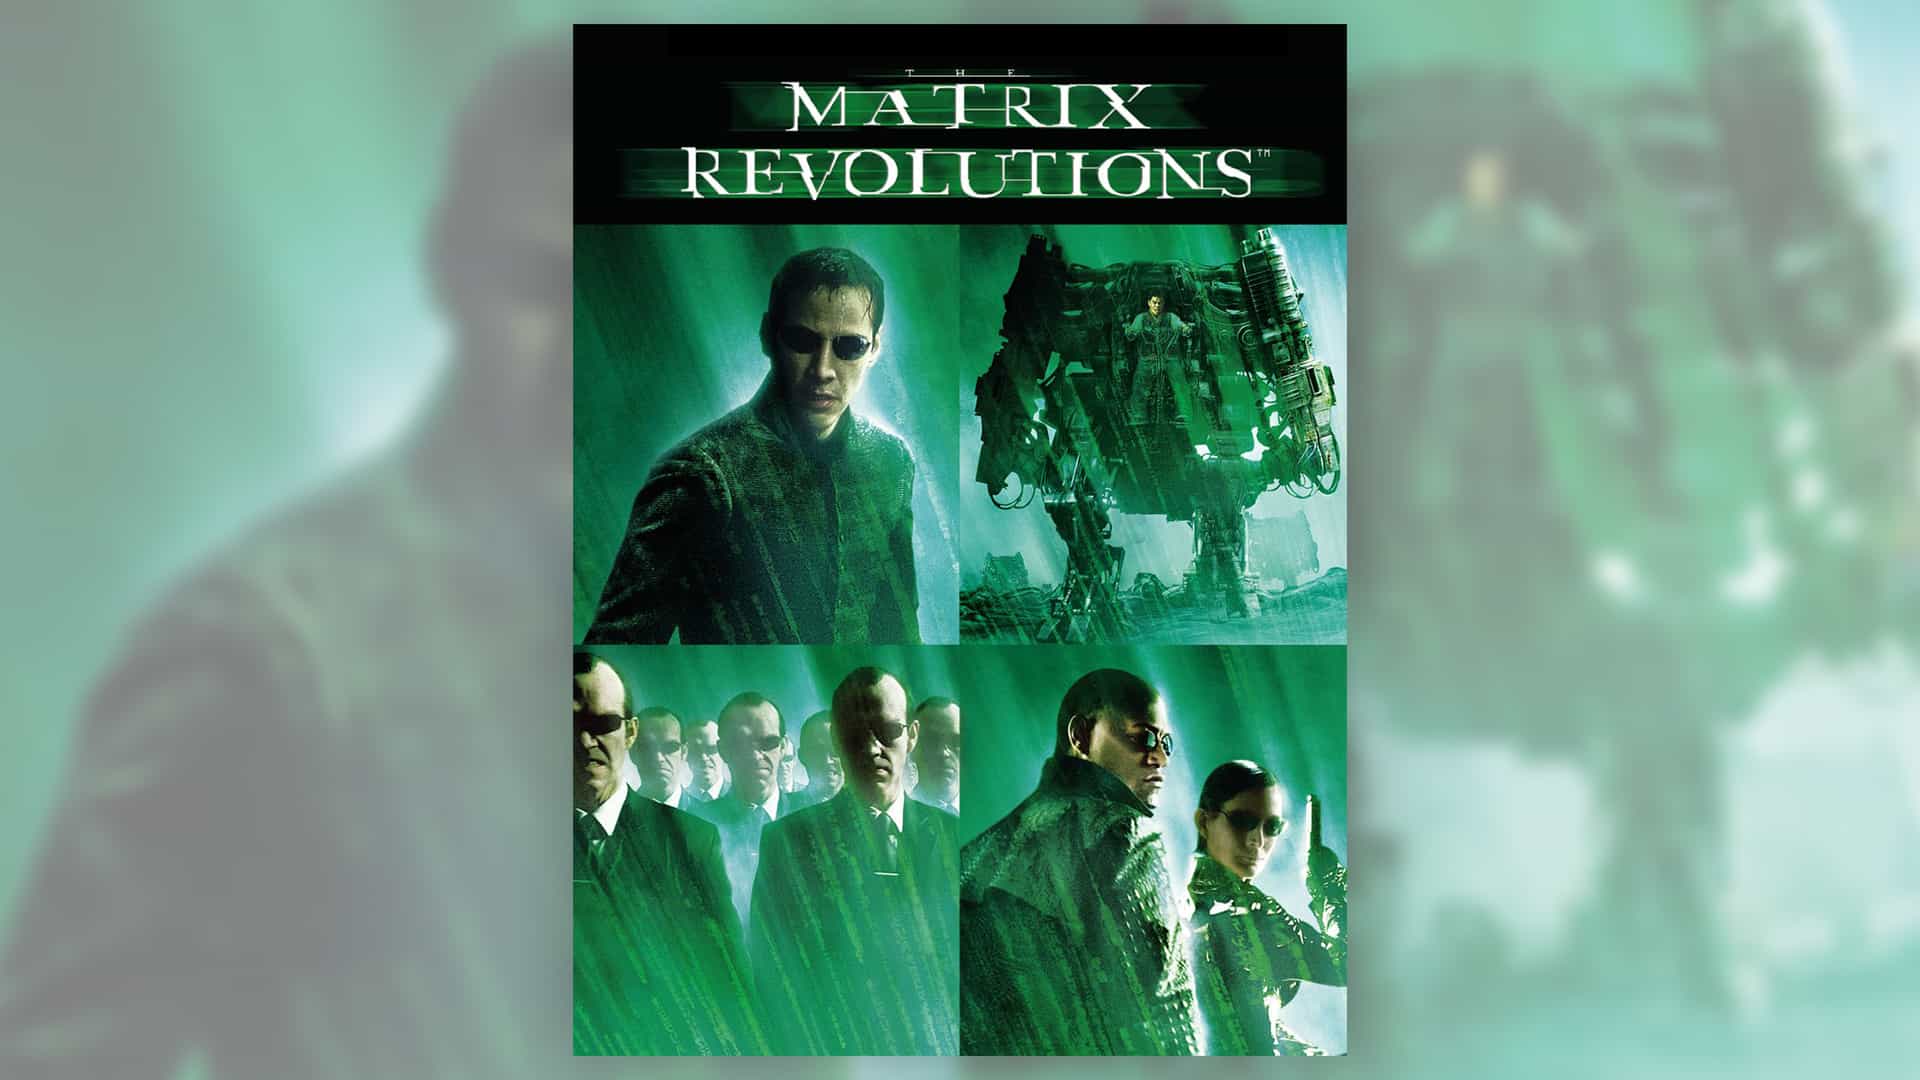 La gente todavía no ha superado esta terrible portada del DVD Matrix Revolutions